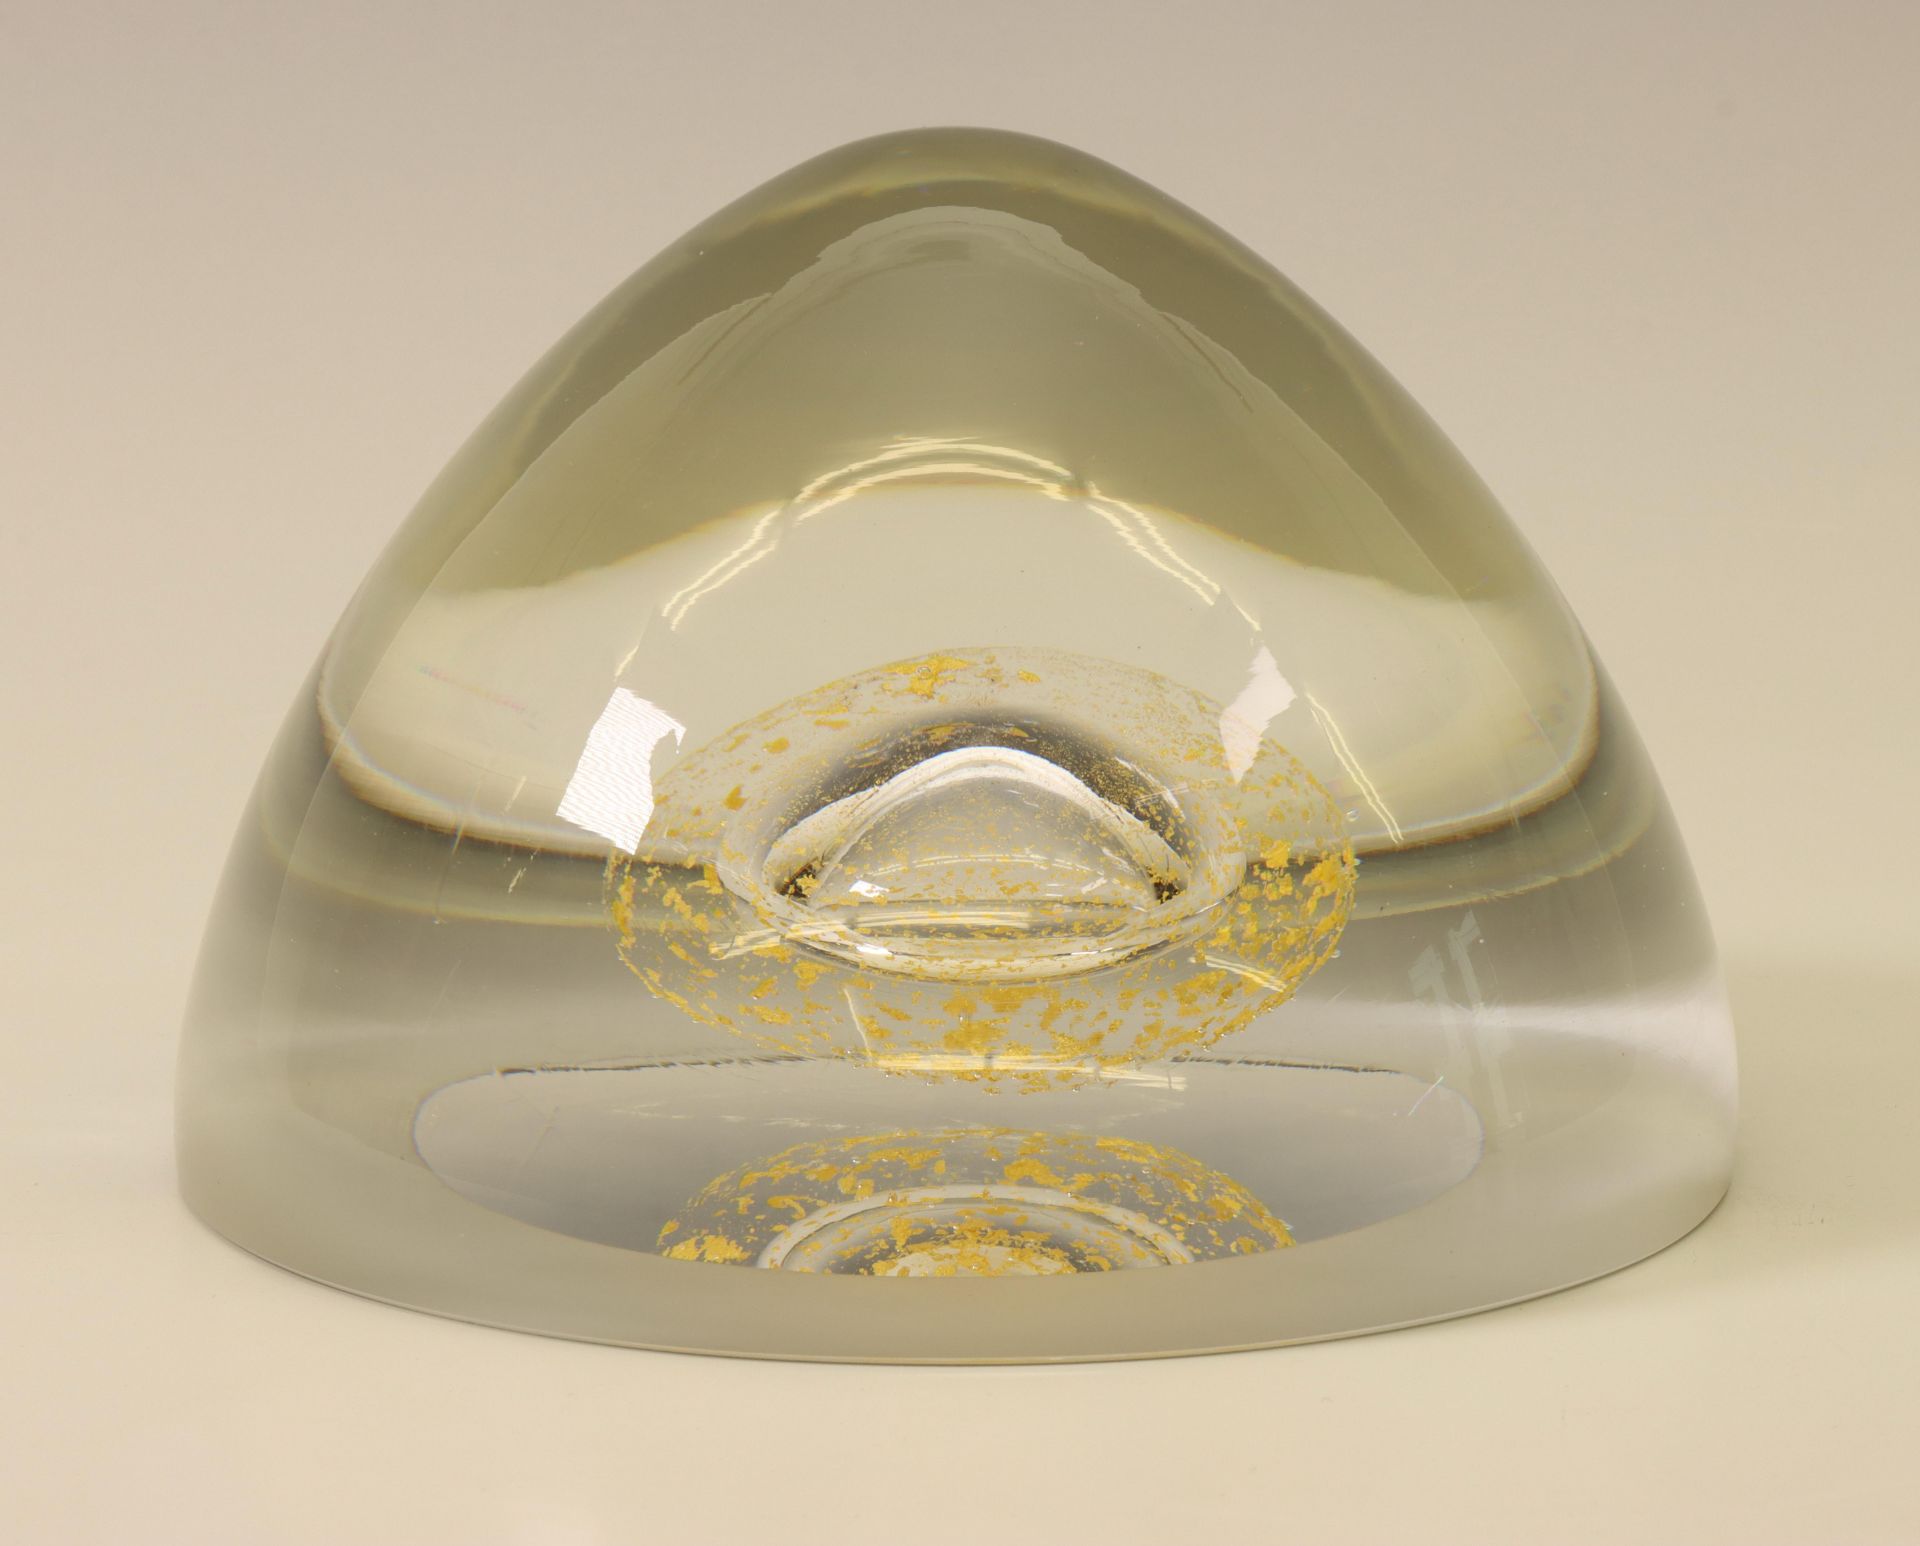 Winnie Teschmacher (1958), konisch glazen object deels gesatineerd, met ingesloten luchtbel,